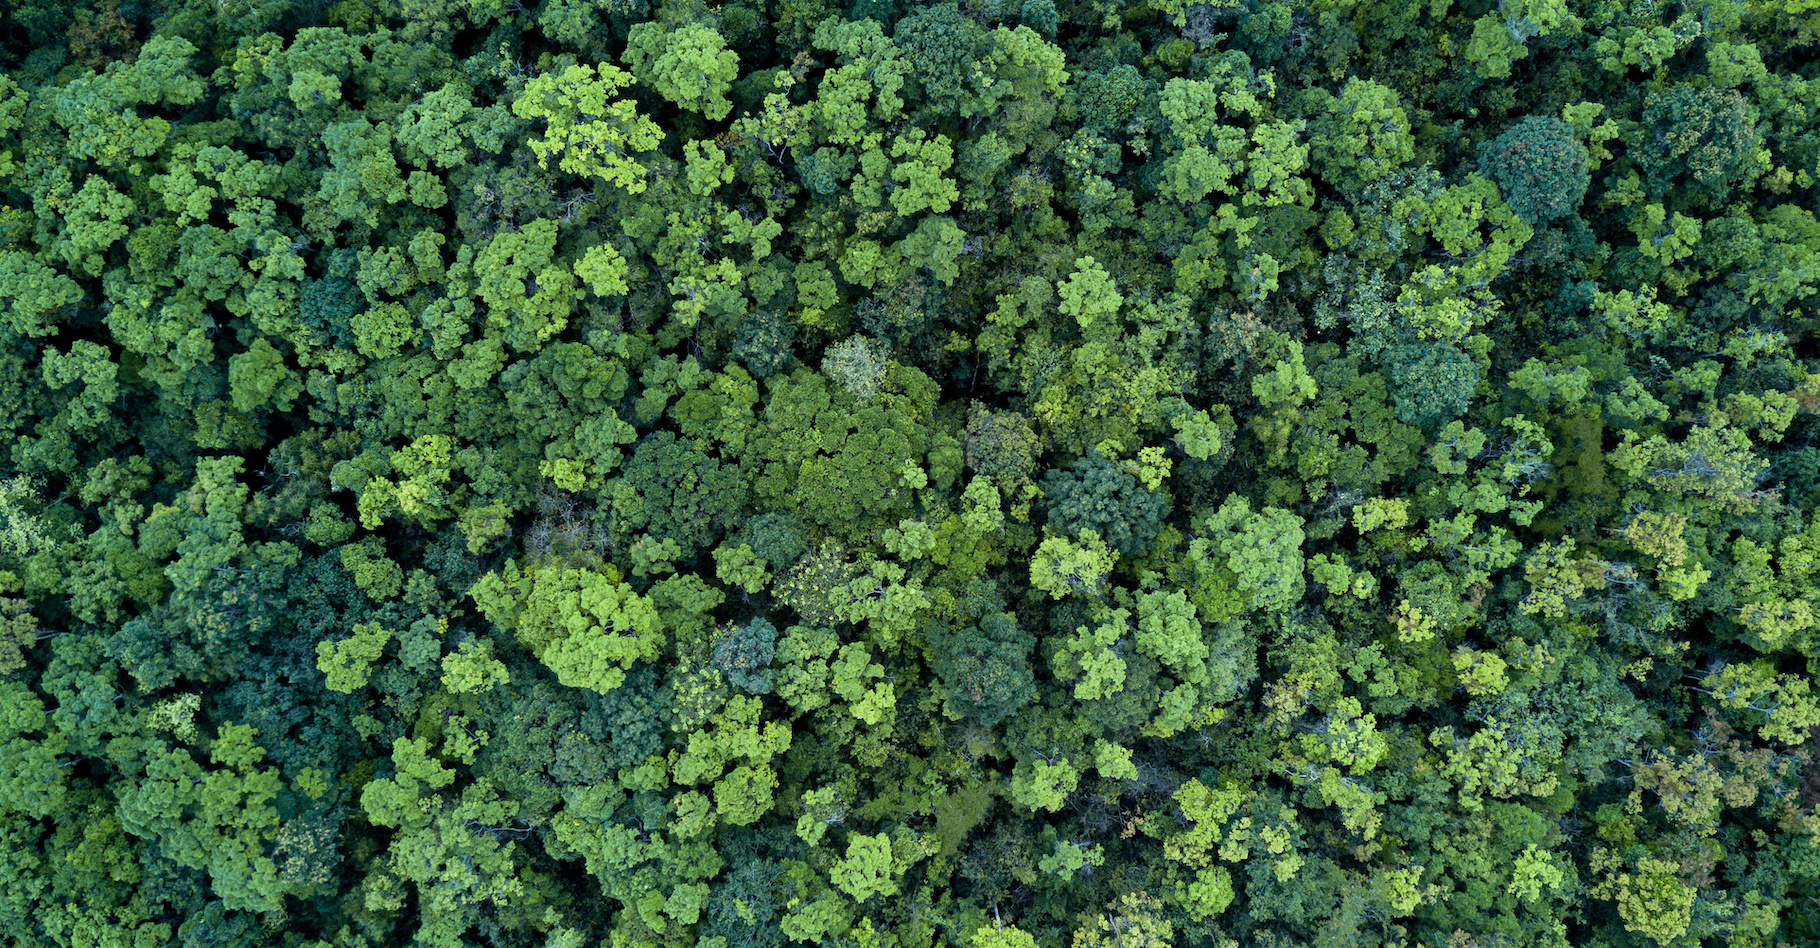 Les forêts stockent du carbone et beaucoup comptent sur elles pour nous aider à limiter le réchauffement climatique. Ce ne sera pas si automatique, préviennent les chercheurs. © Kalyakan, Adobe Stock